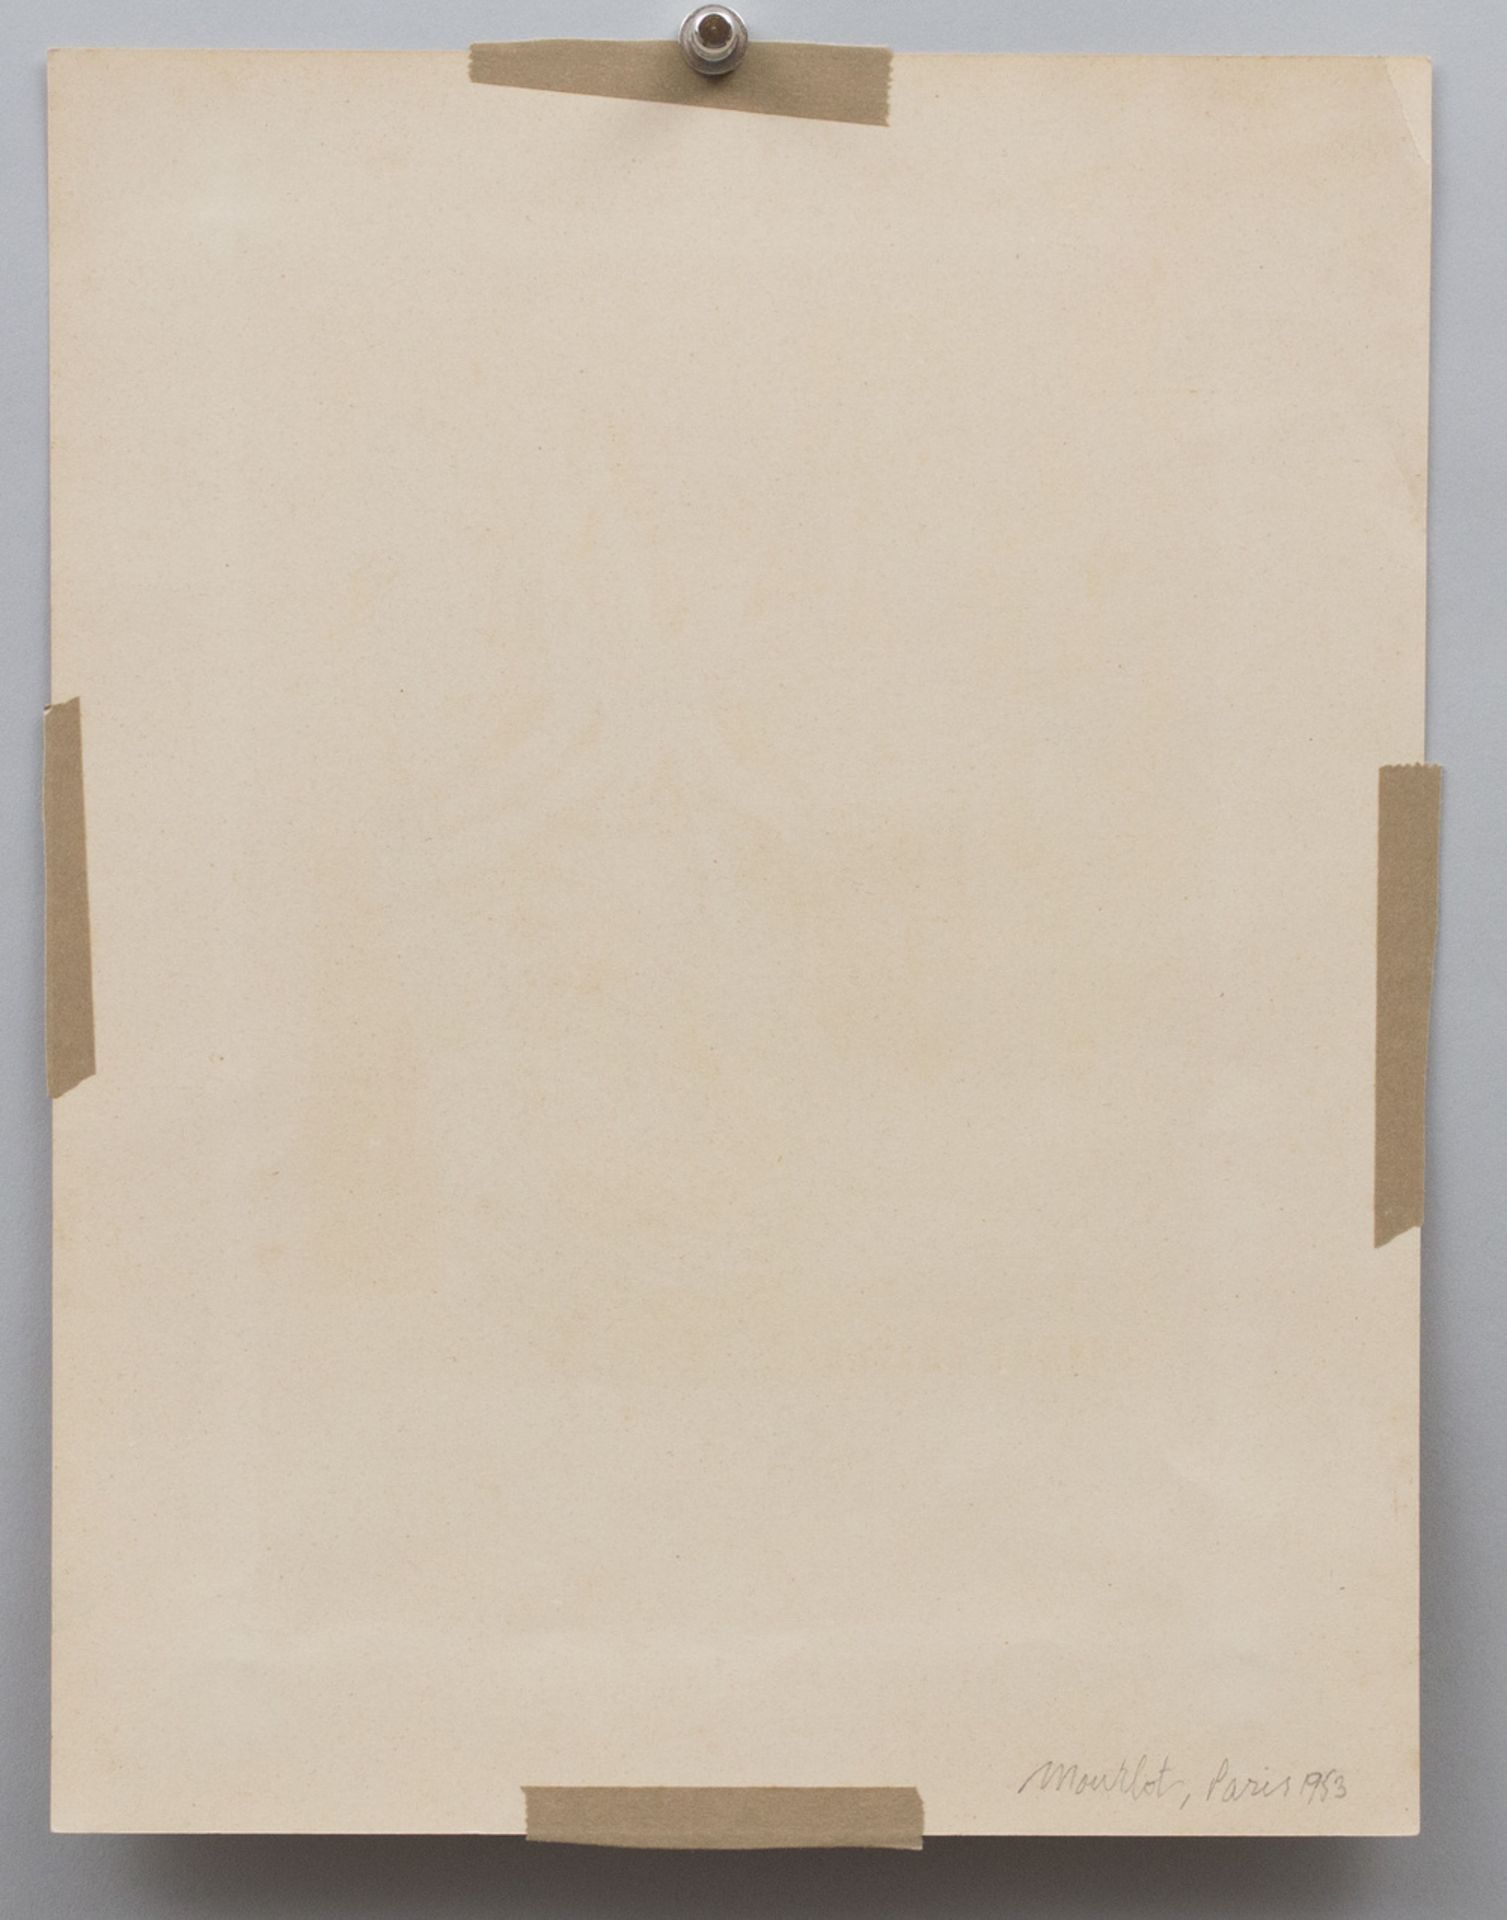 Georges BRAQUE (1882-1963), 'Ausstellungsplakat' / 'Exhibition poster', Berggruen & Cie, 1953 - Bild 3 aus 3